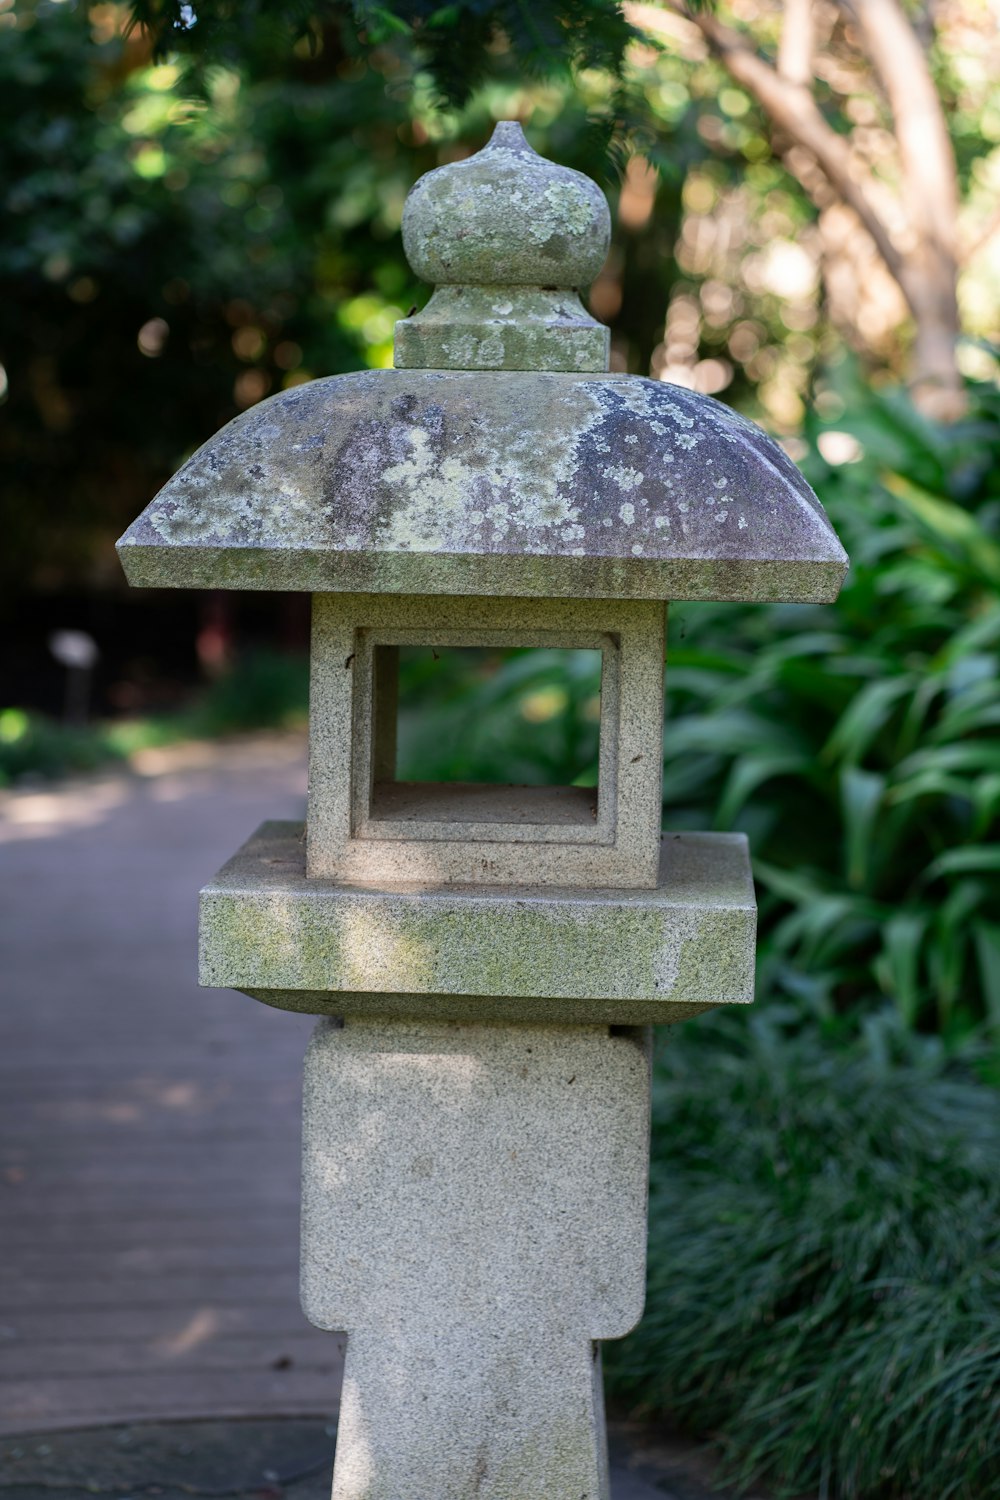 a stone lantern sitting on top of a sidewalk